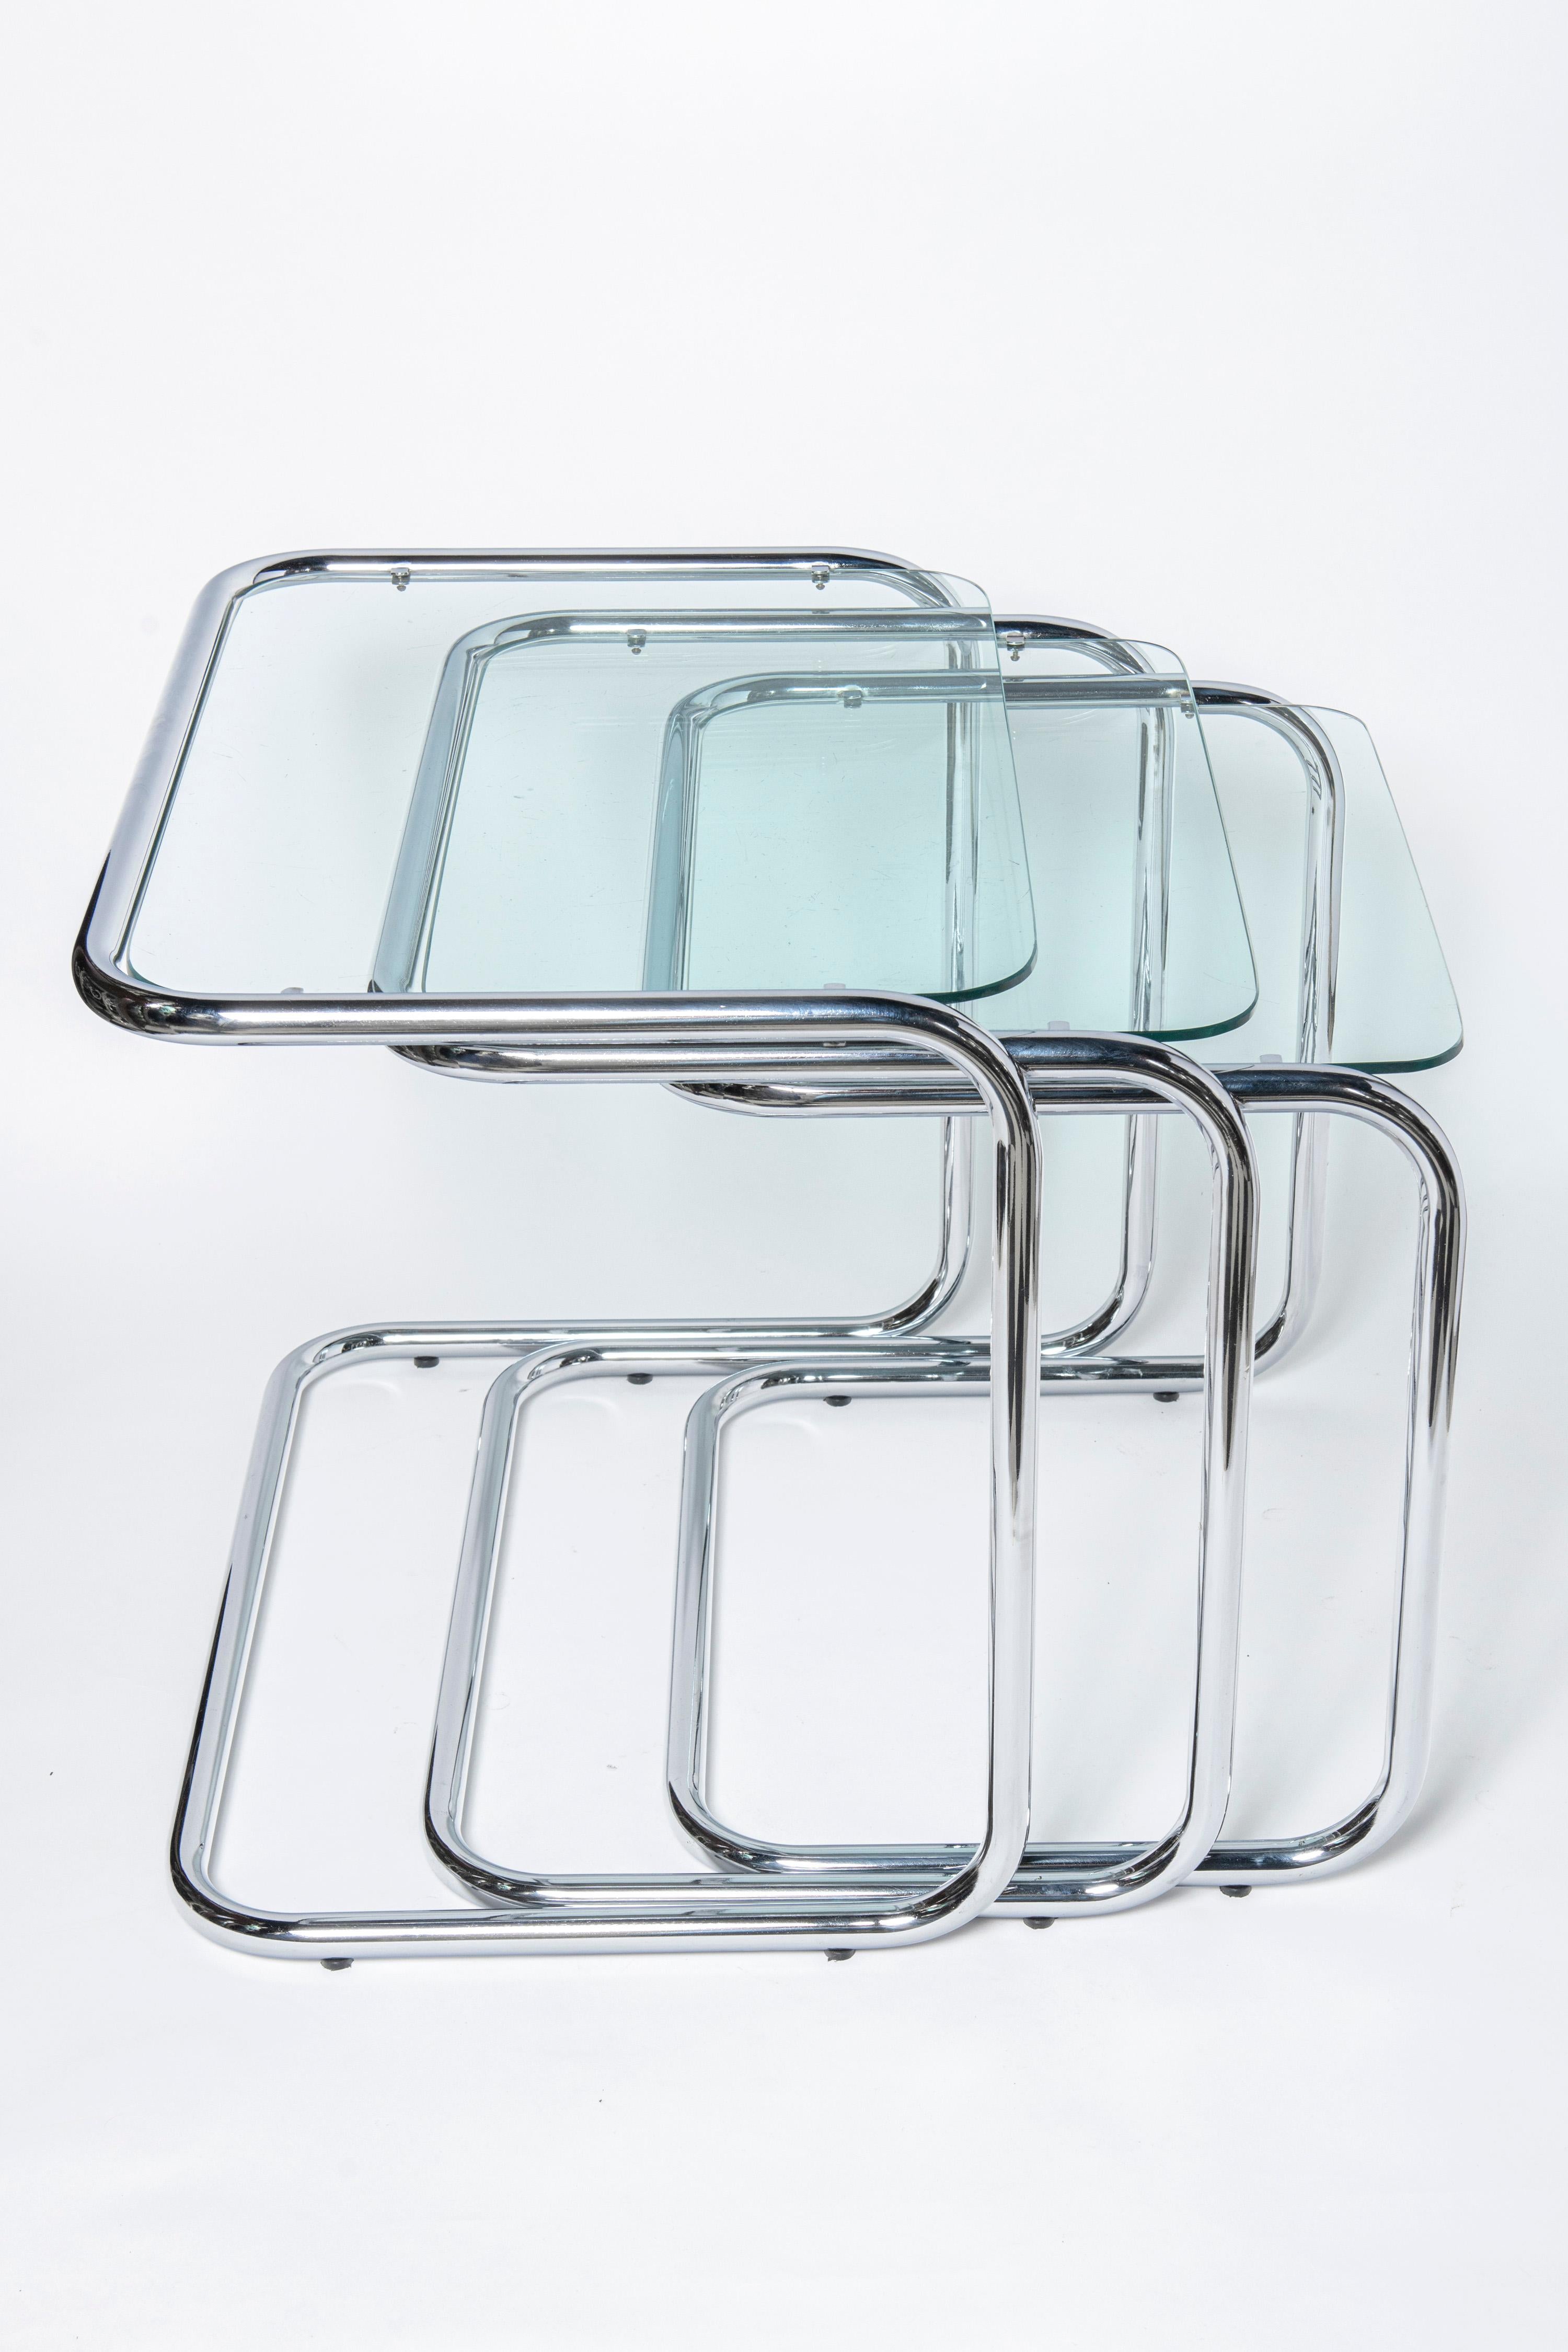 Mid-Century Modern Chrome and glass nest tables Designed by Reinaldo Leiro and Arnoldo Gaite, 1970. For Sale